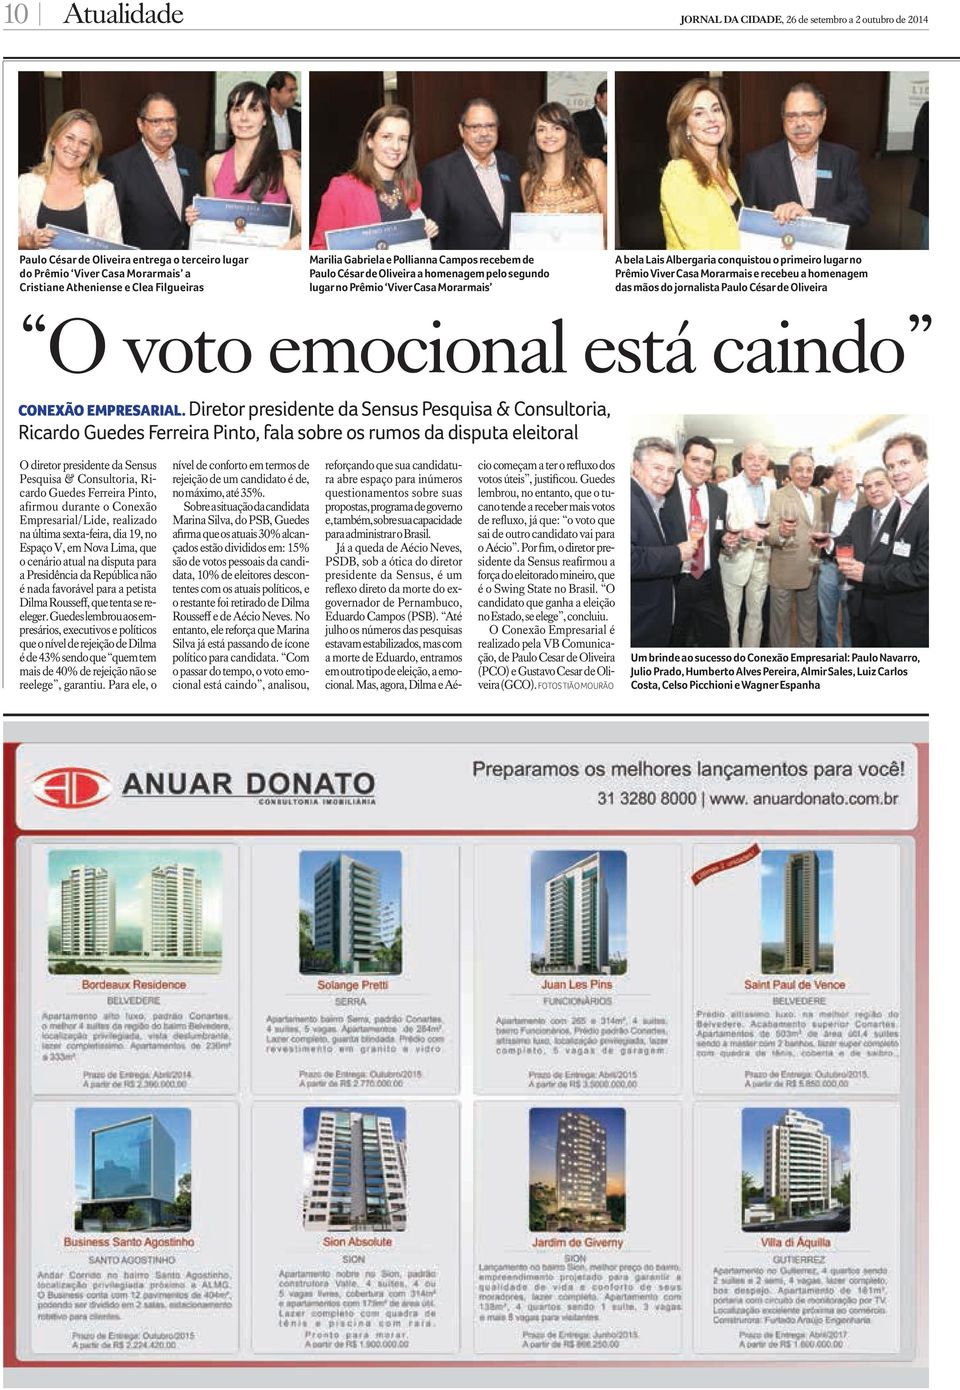 Morarmais e recebeu a homenagem das mãos do jornalista Paulo César de Oliveira O voto emocional está caindo Conexão Empresarial.